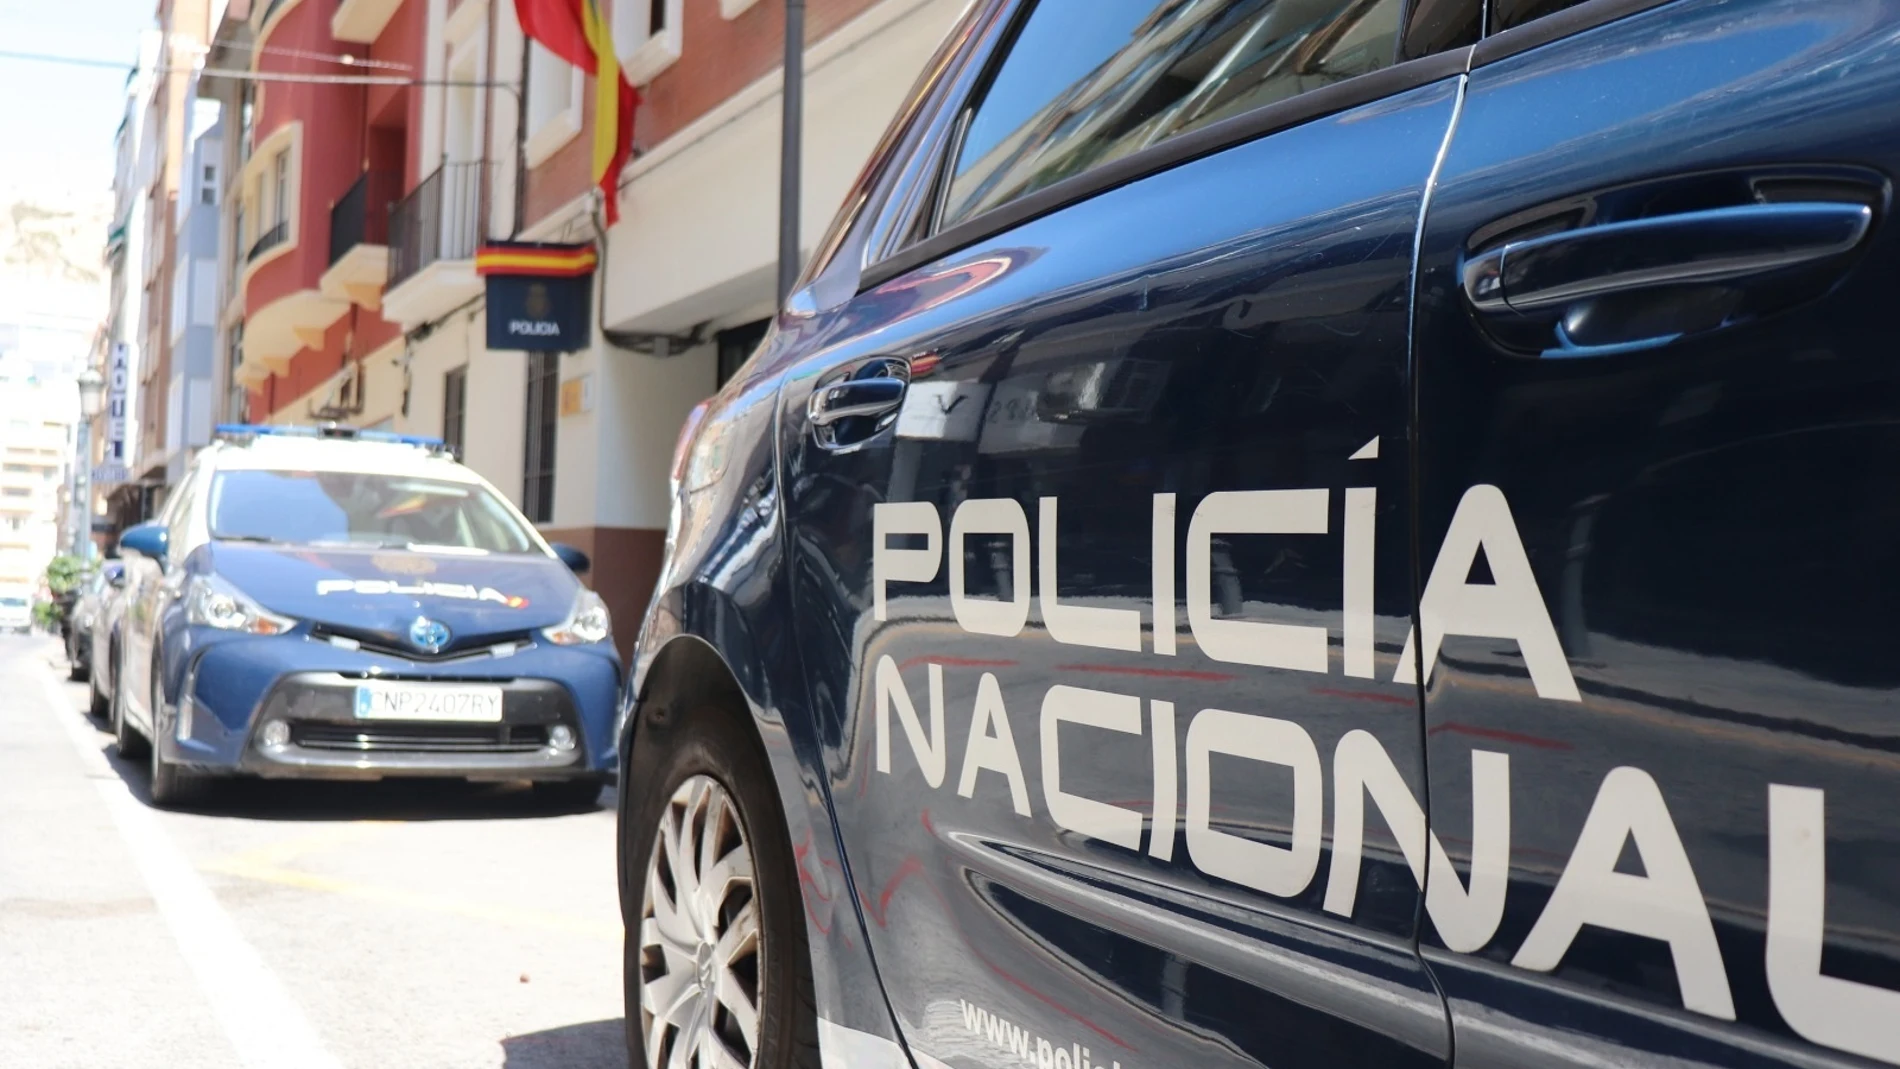 Foto de archivo de la Comisaría de Policía Nacional de Alicante Centro